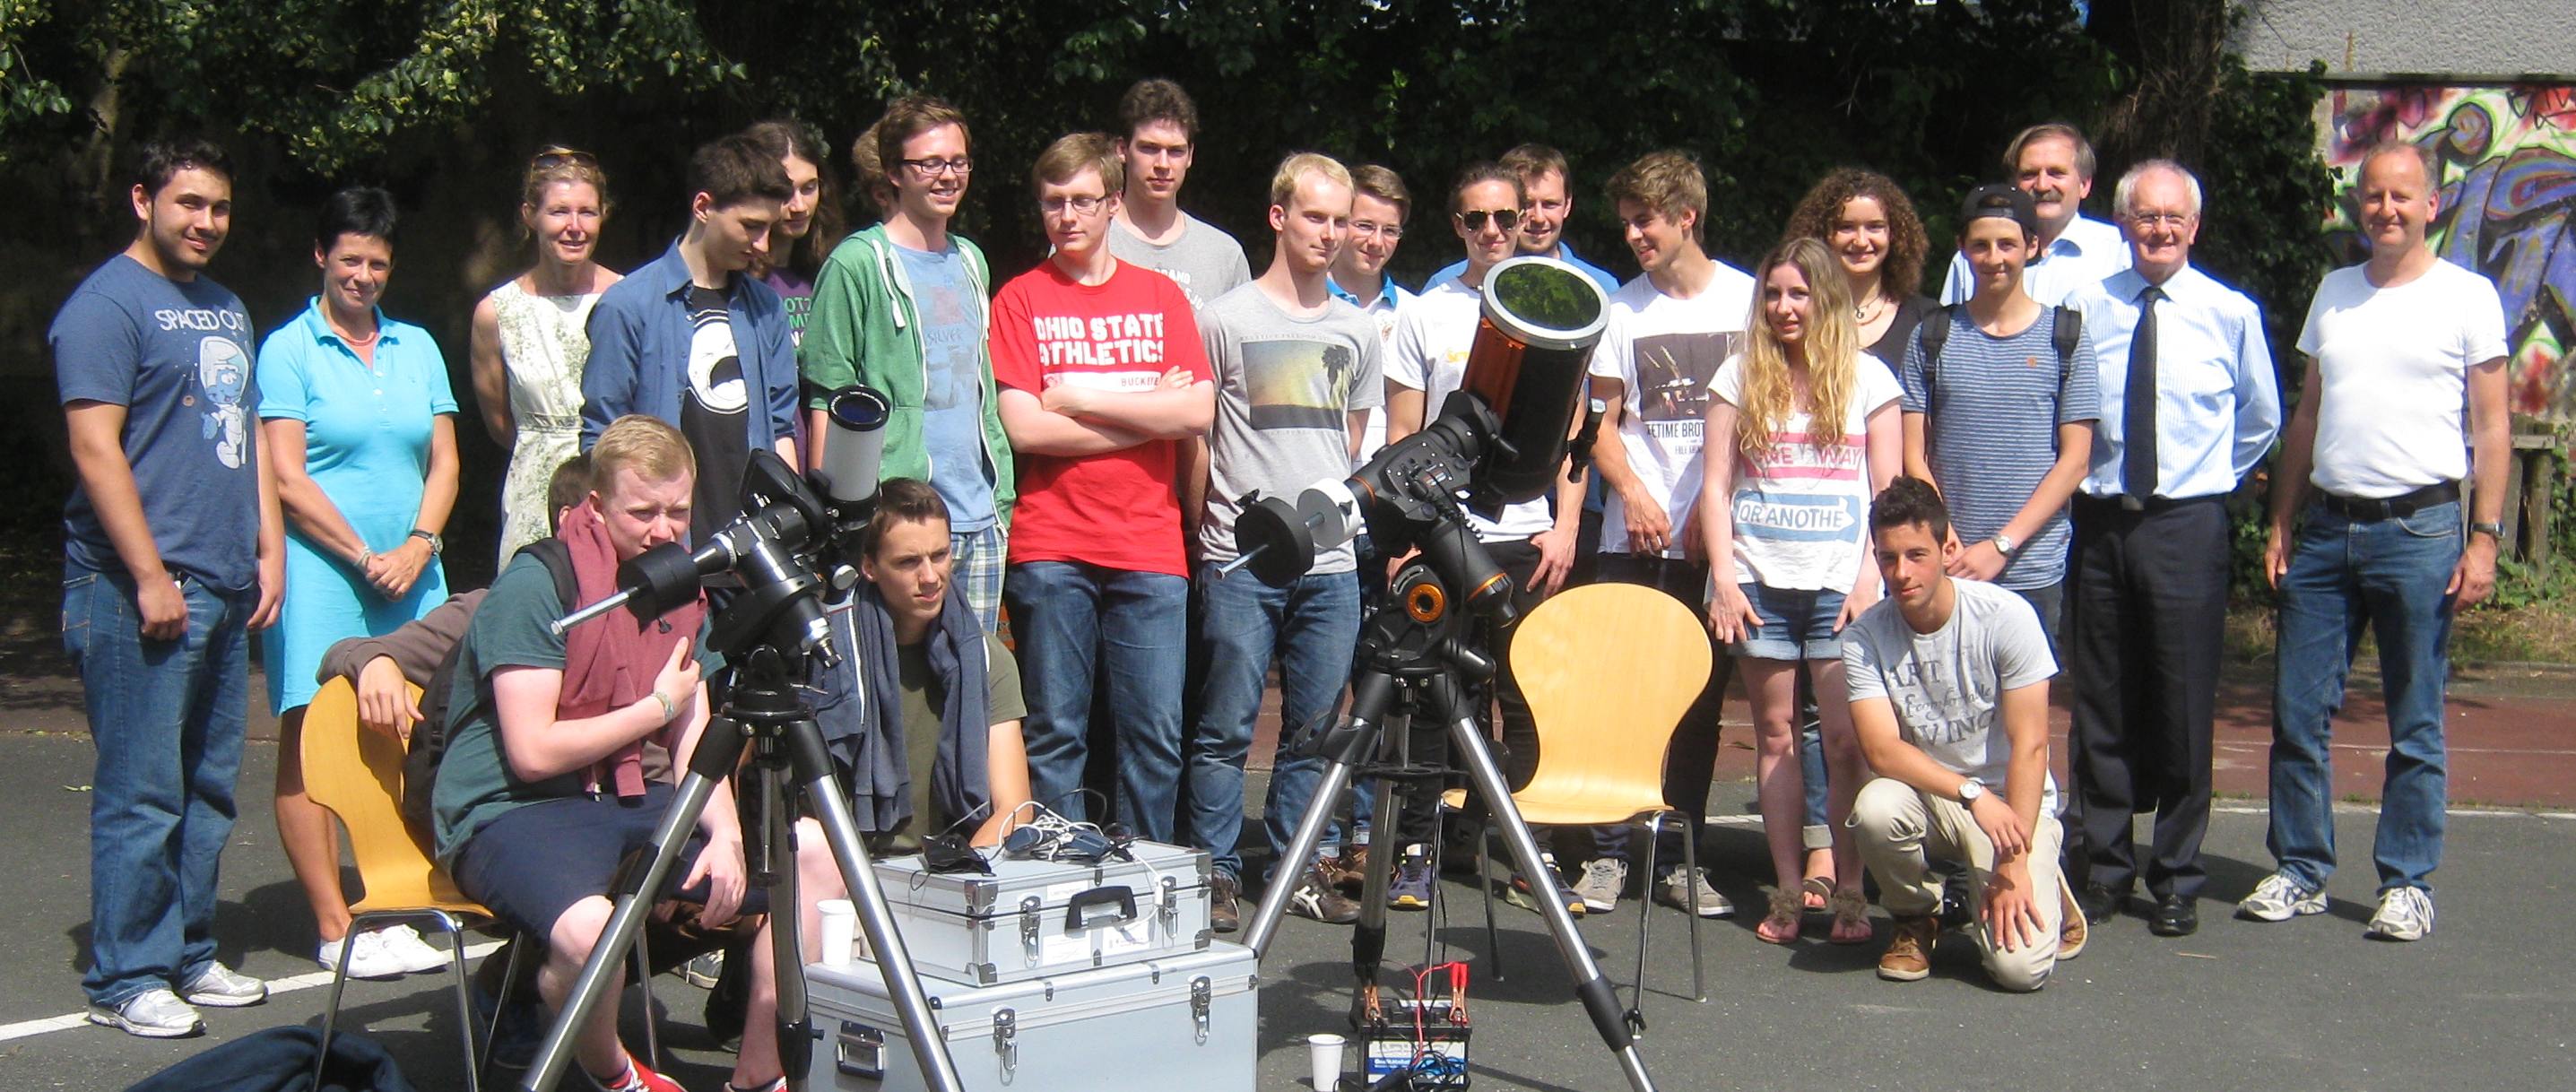 Übergabe des Sonnenteleskops an das Melanchthon-Gymnasium